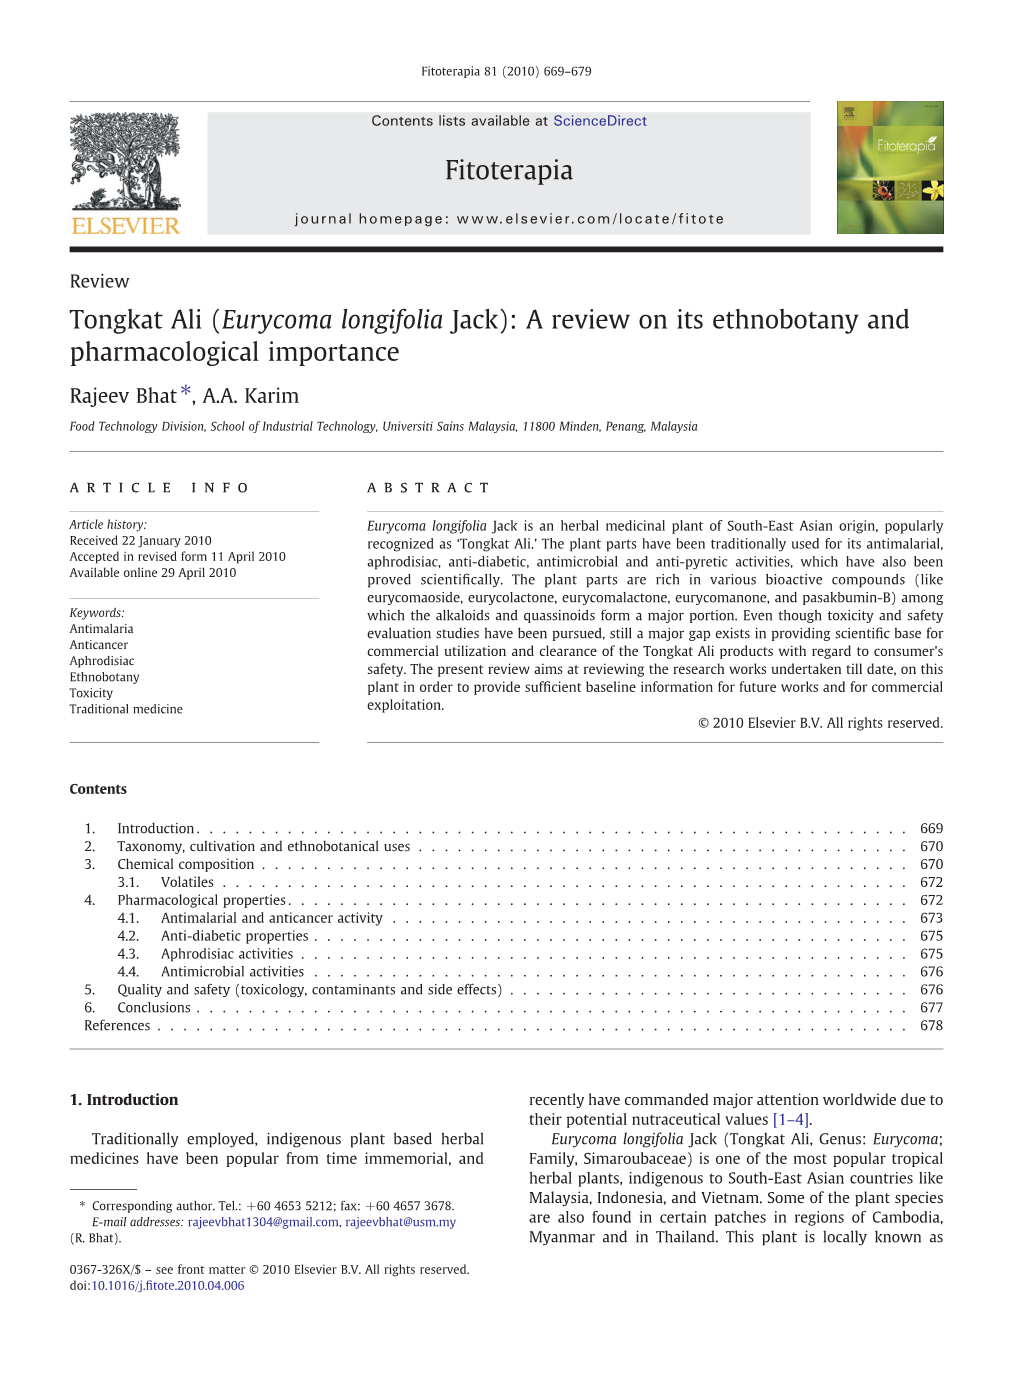 Tongkat Ali (Eurycoma Longifolia Jack): a Review on Its Ethnobotany and Pharmacological Importance